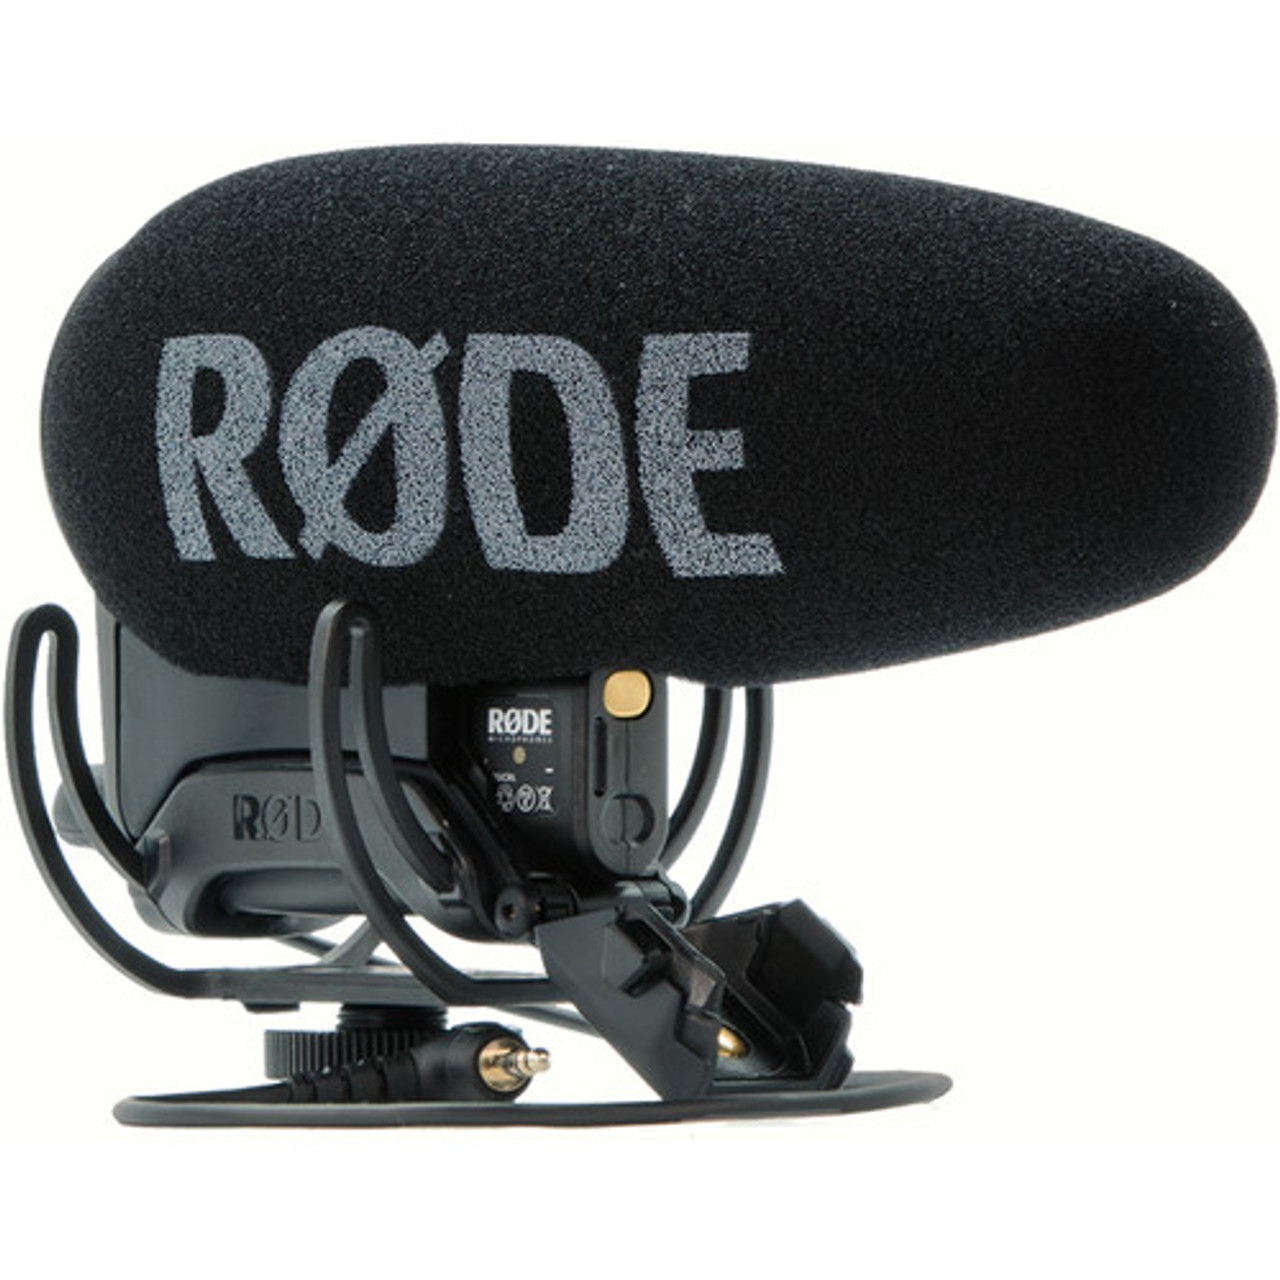 Rode VideoMic Pro Plus On-Camera Shotgun Microphone at